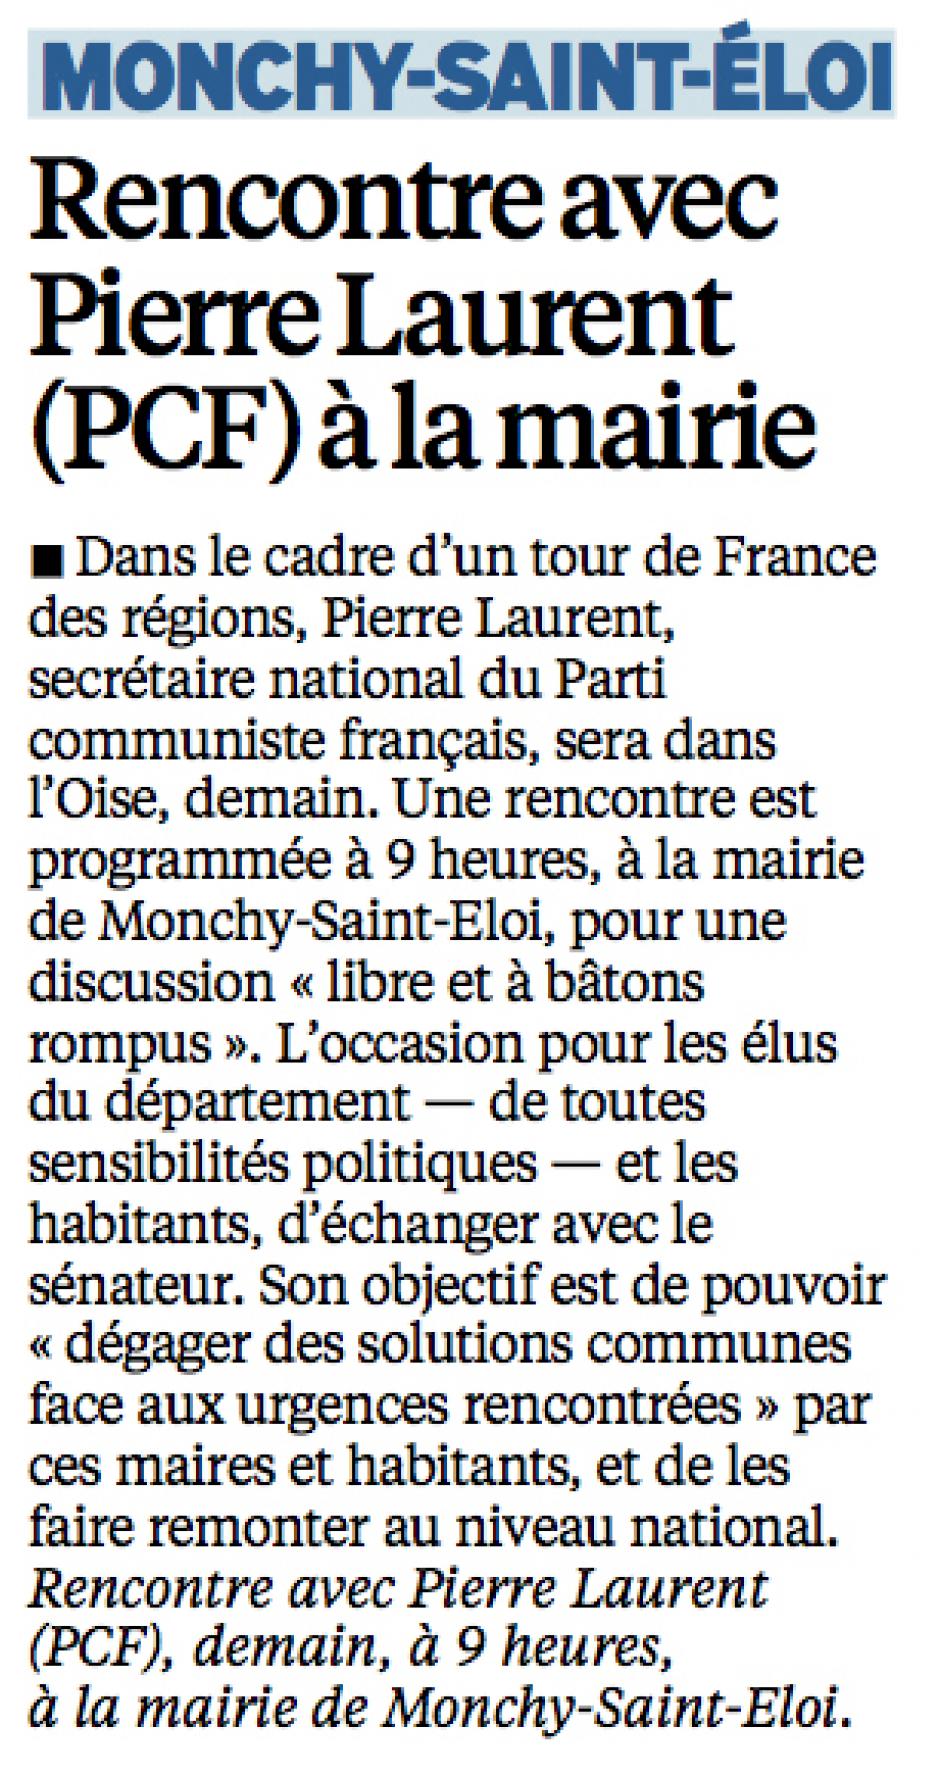 20150610-LeP-Monchy-Saint-Éloi-Rencontre avec Pierre Laurent (PCF) à la mairie